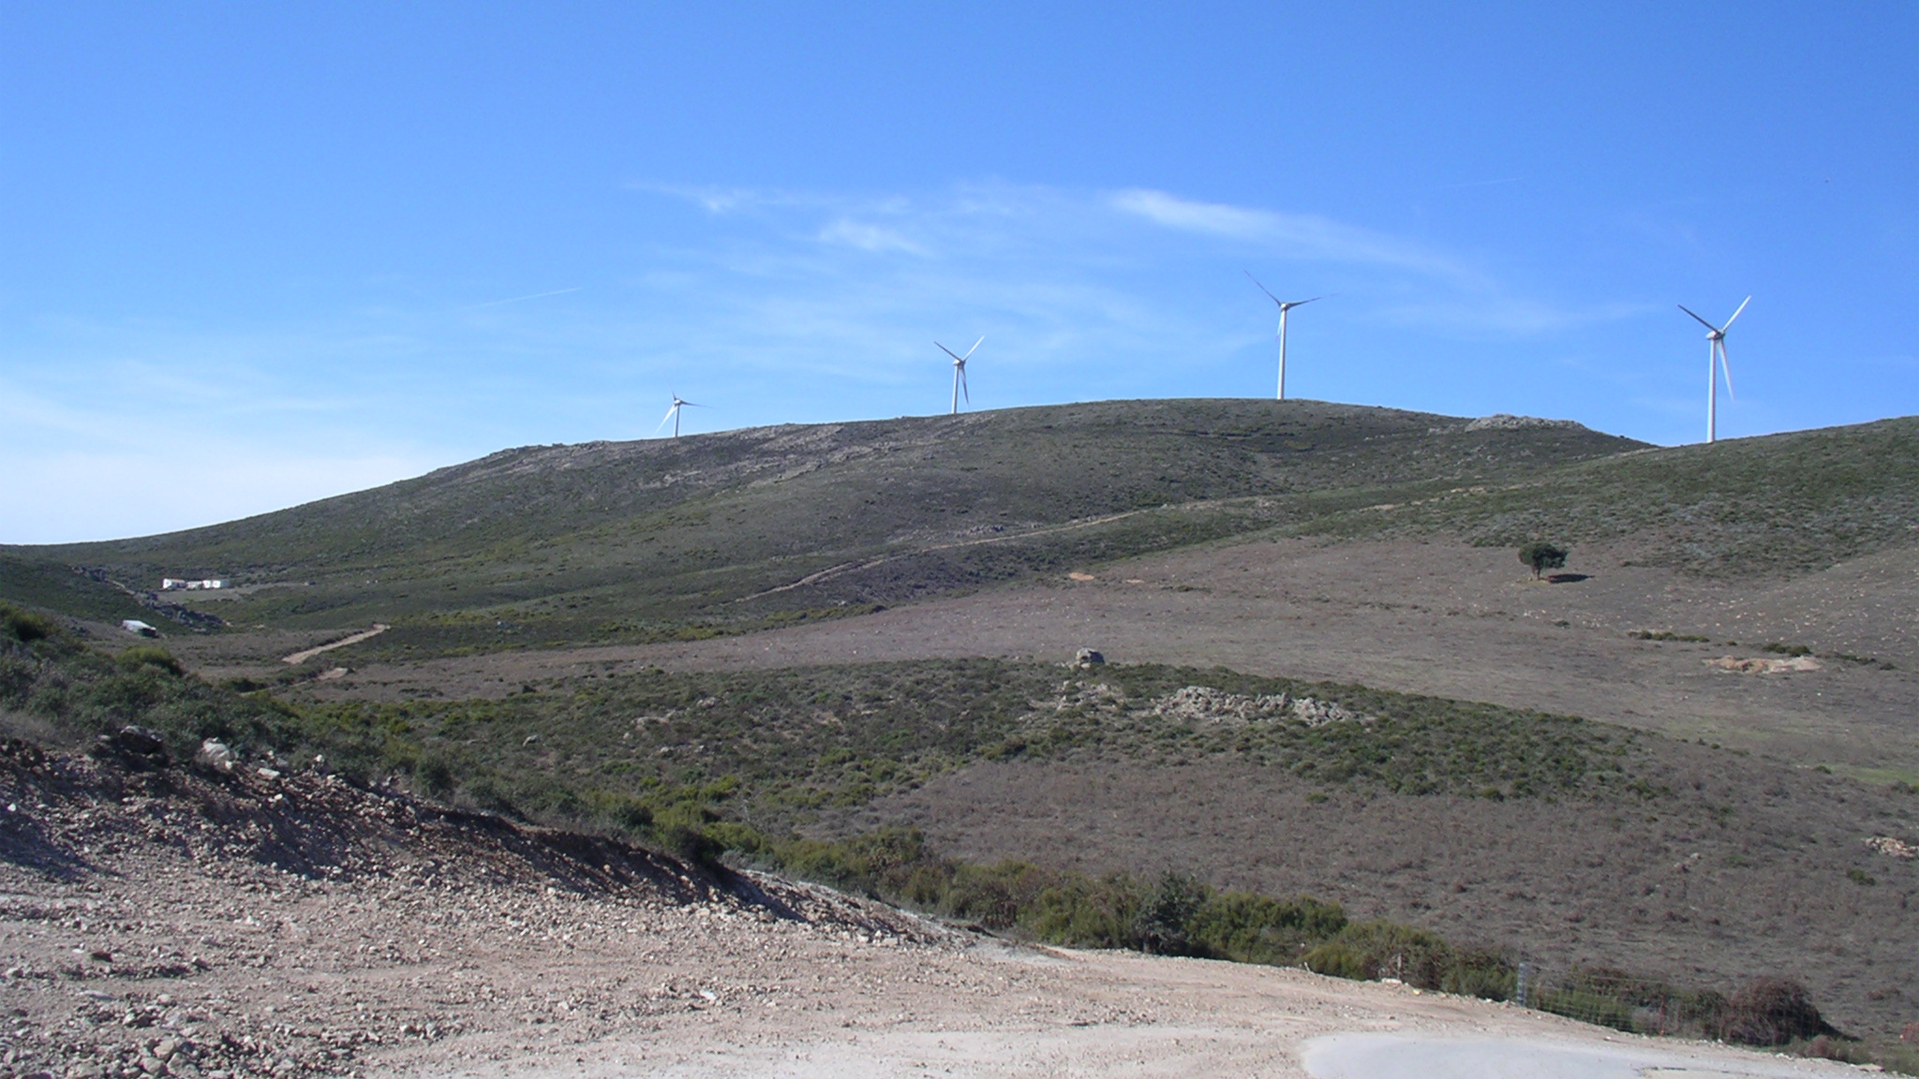 Parco eolico di Buddusò-Alà dei Sardi (SS).